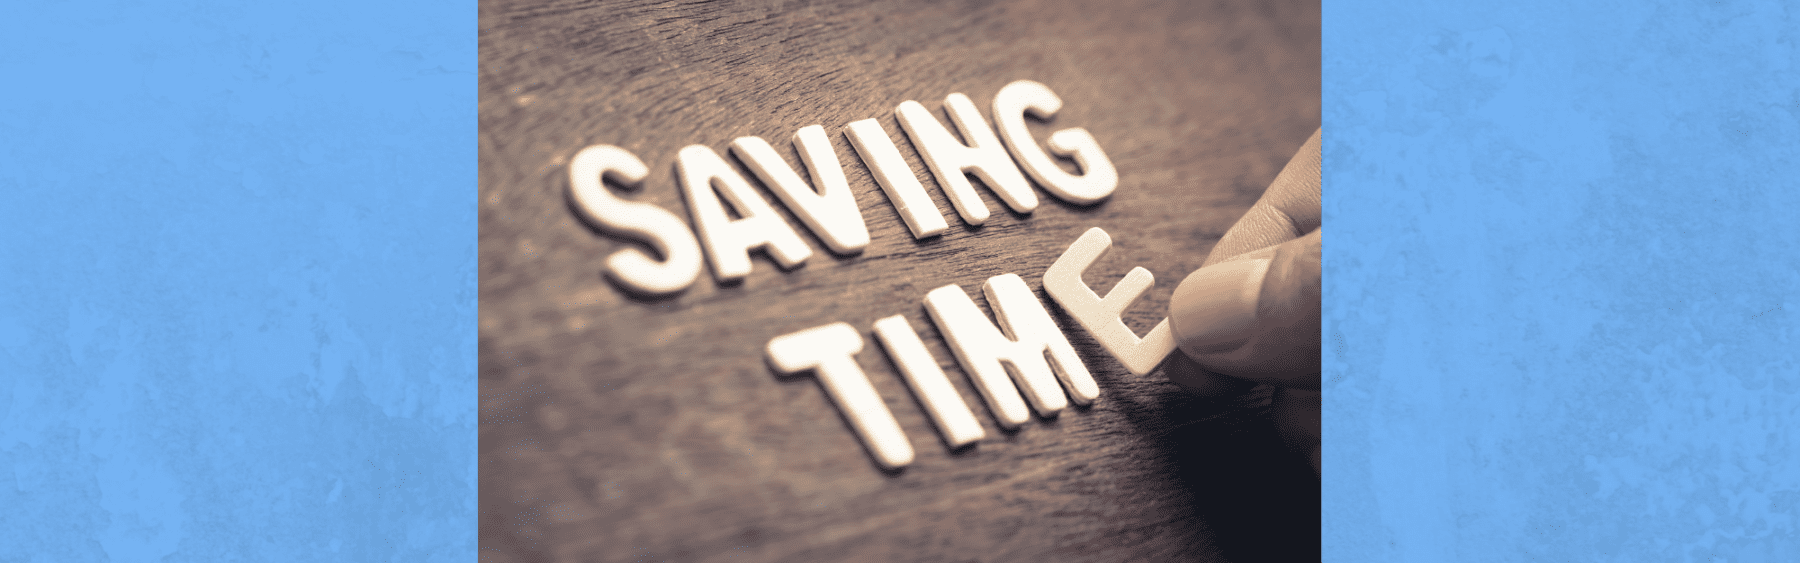 time savings